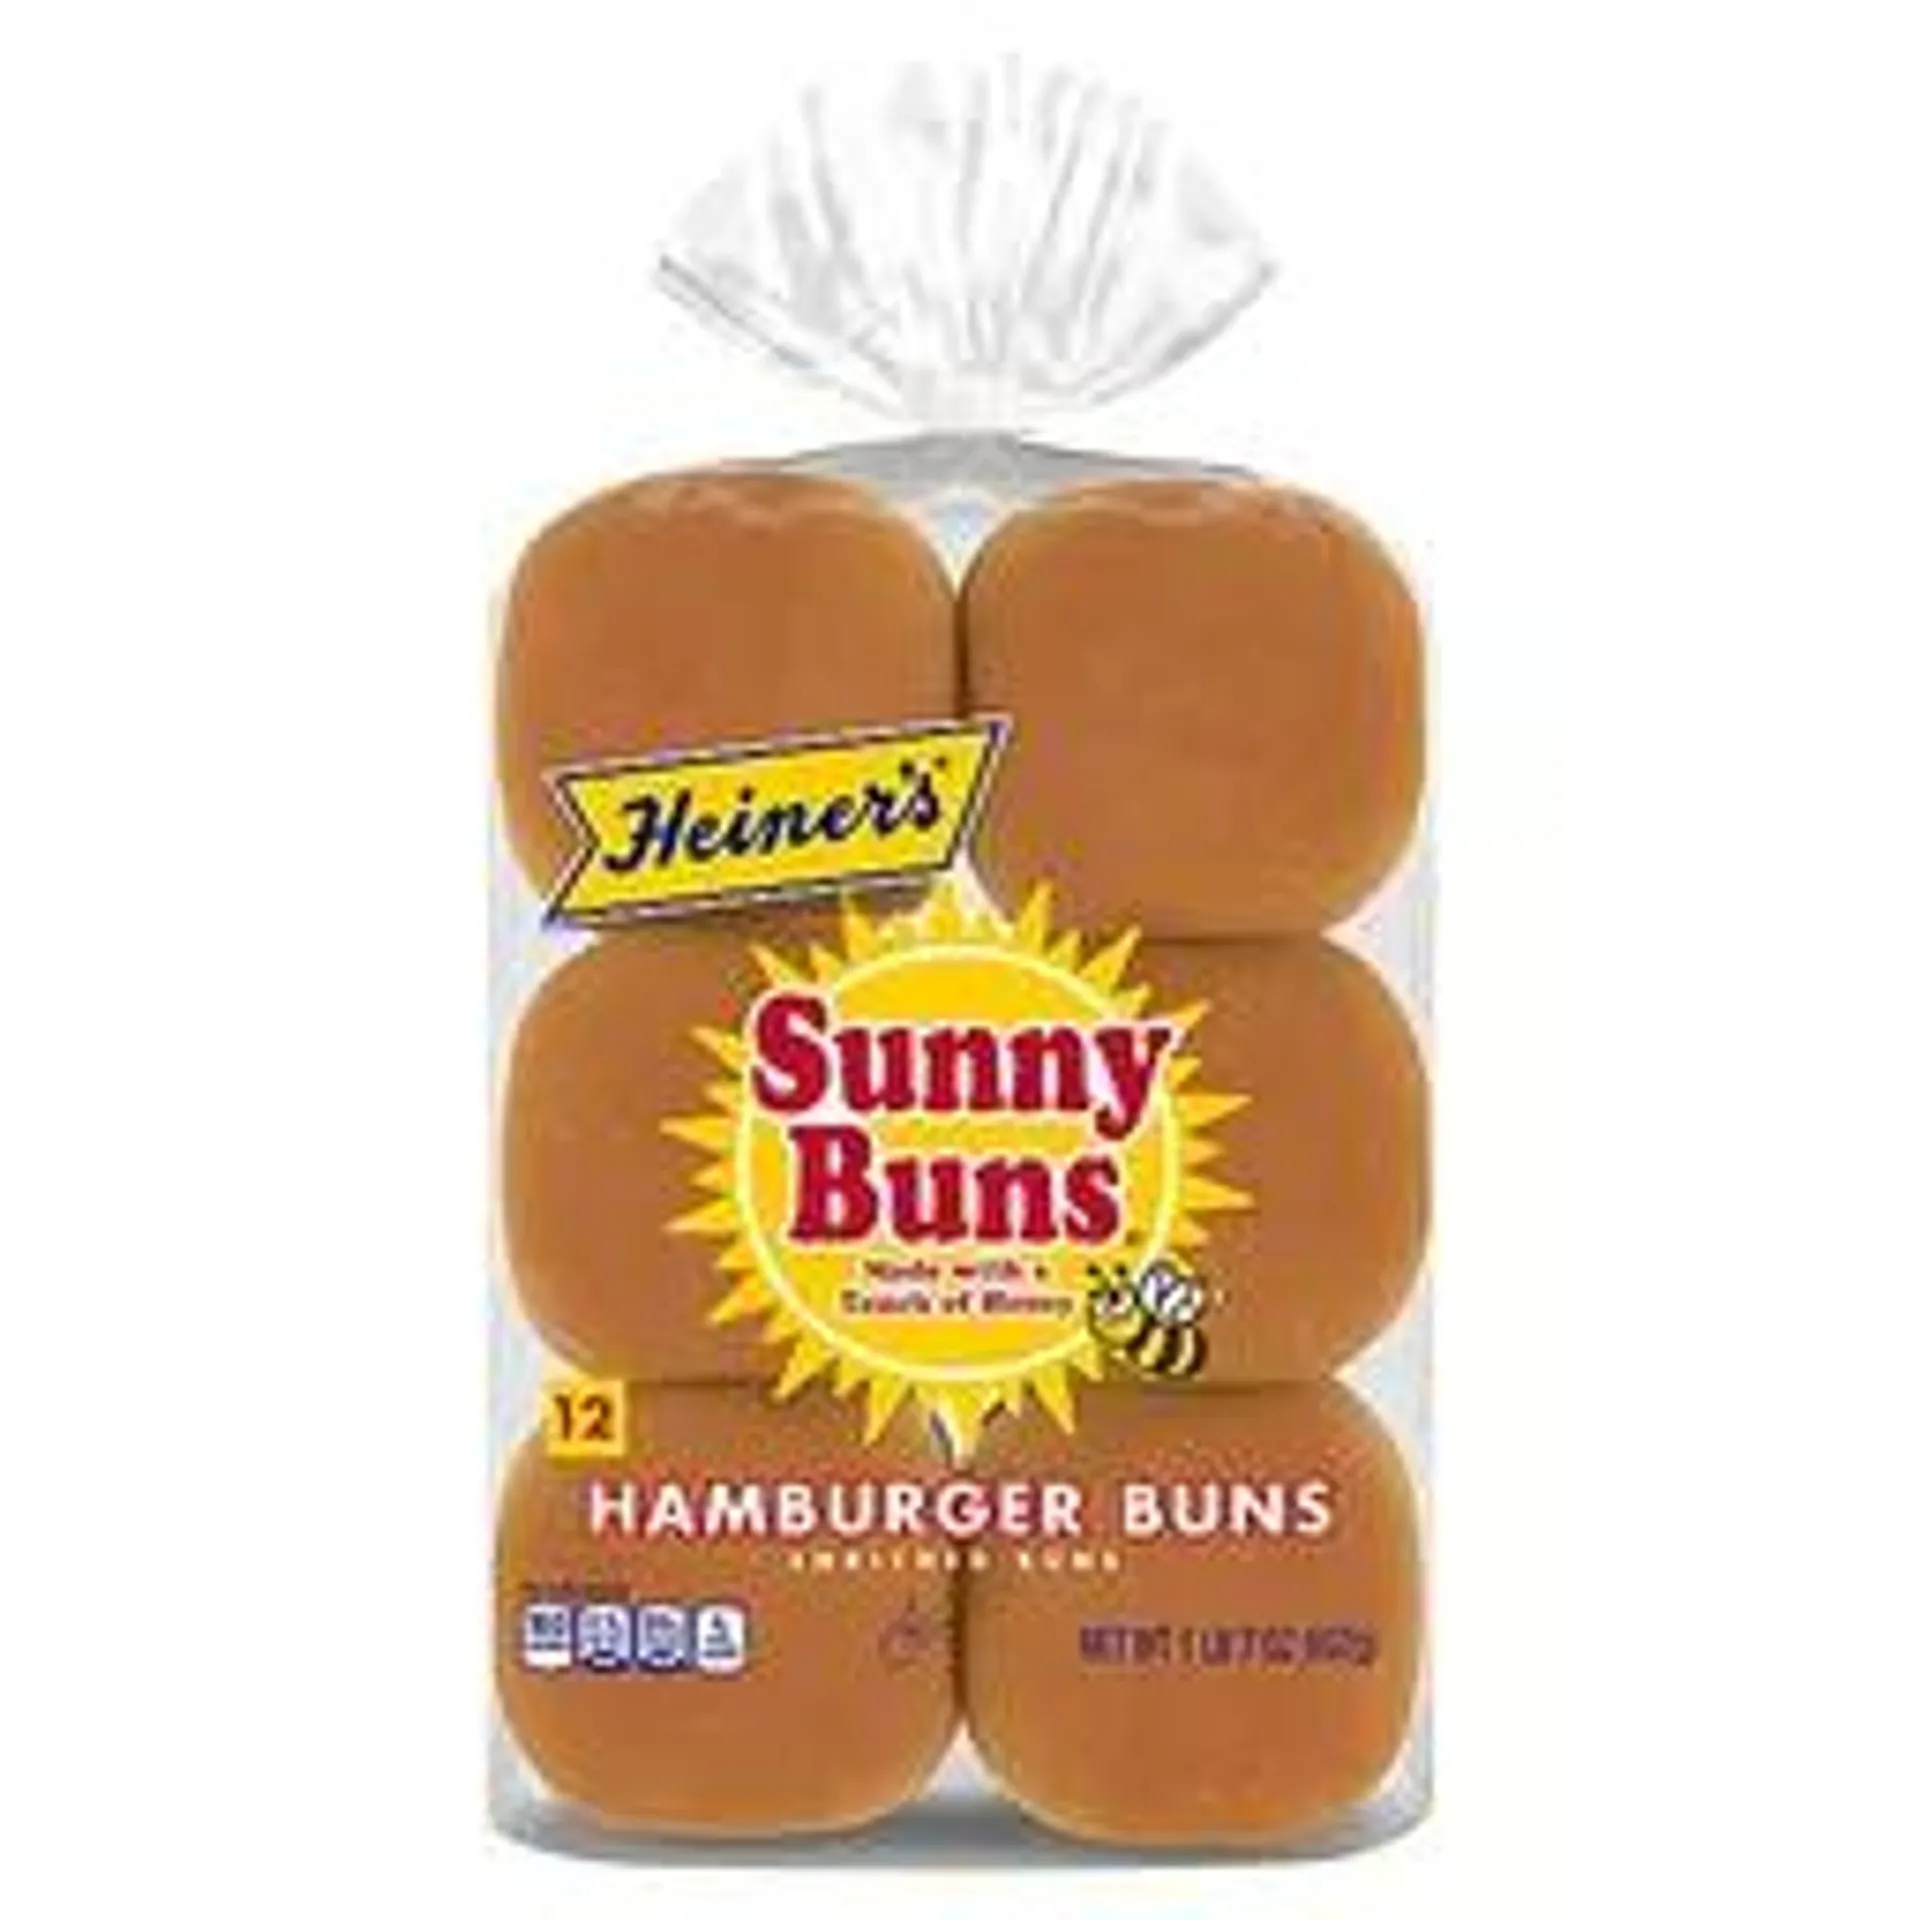 Heiner's Sunny Buns White Hamburger Buns 12 Ct 23 Oz